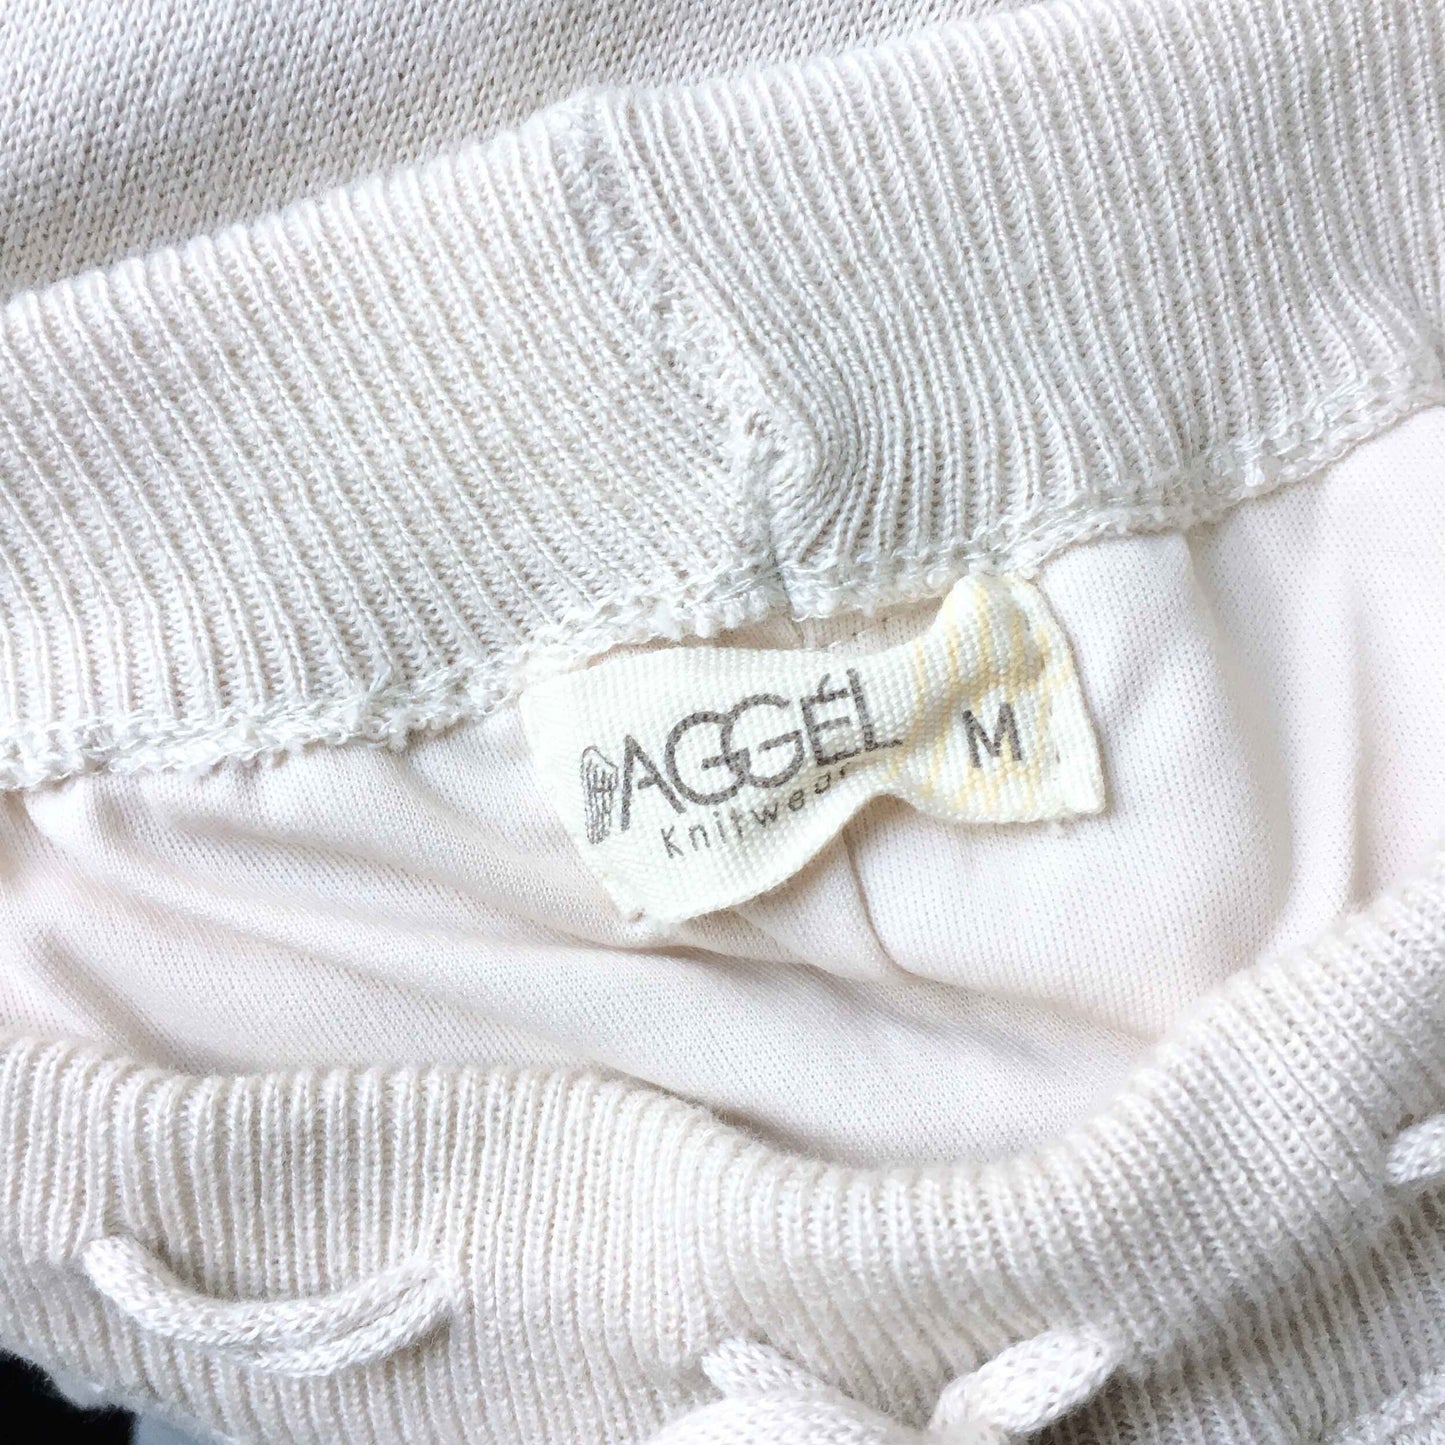 Aggél knitwear cropped pom pom pants - size Medium